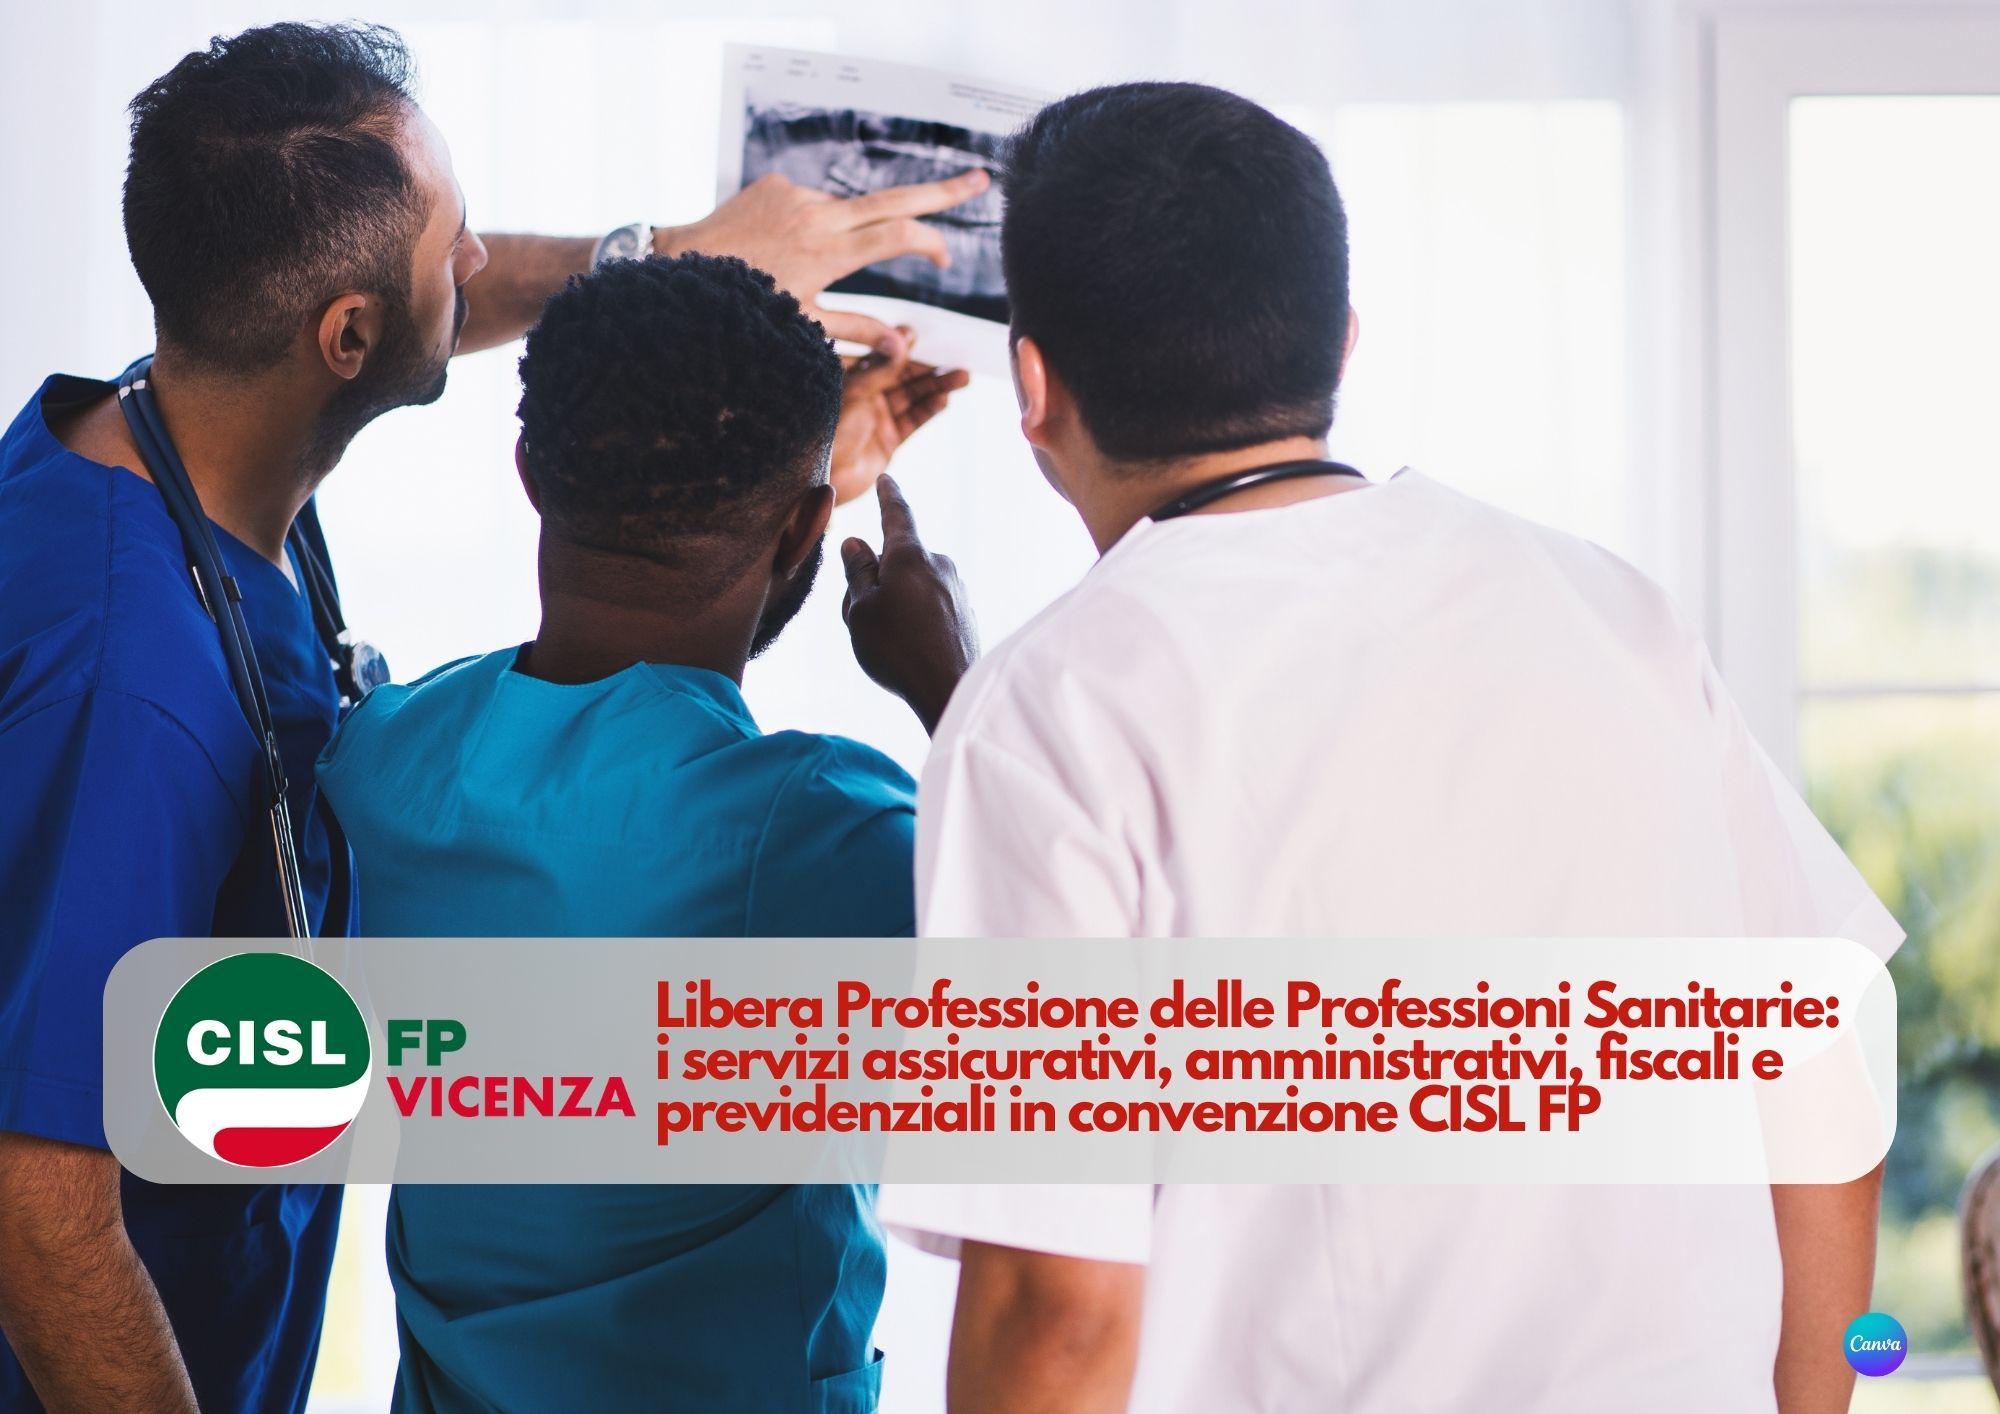 CISL FP Vicenza. Libera professione per le professioni sanitarie. I servizi CISL FP in convenzione